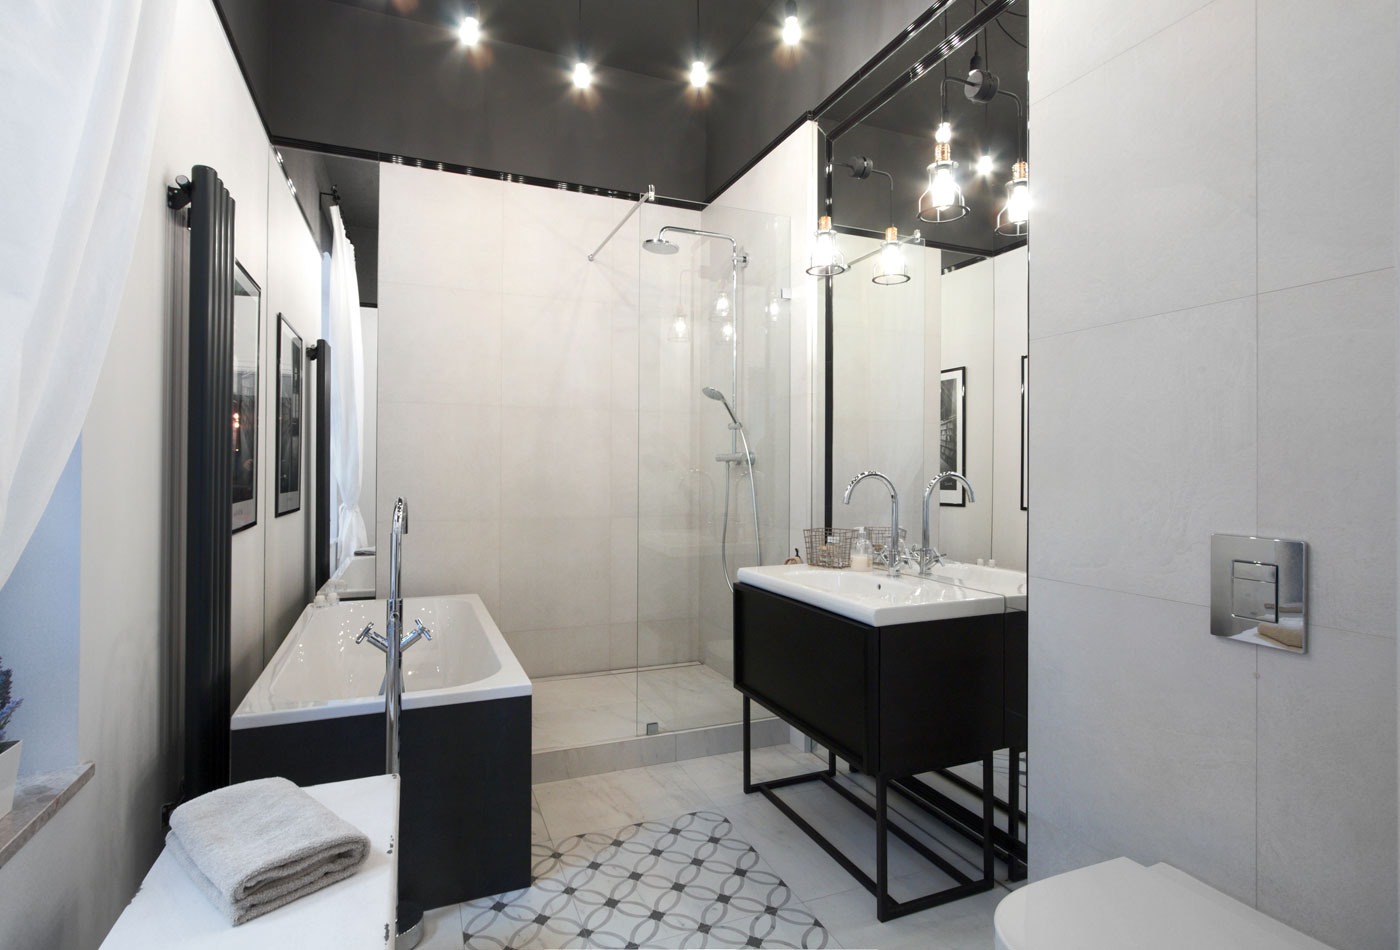 Projekt funkcjonalnej łazienki - Soma Architekci